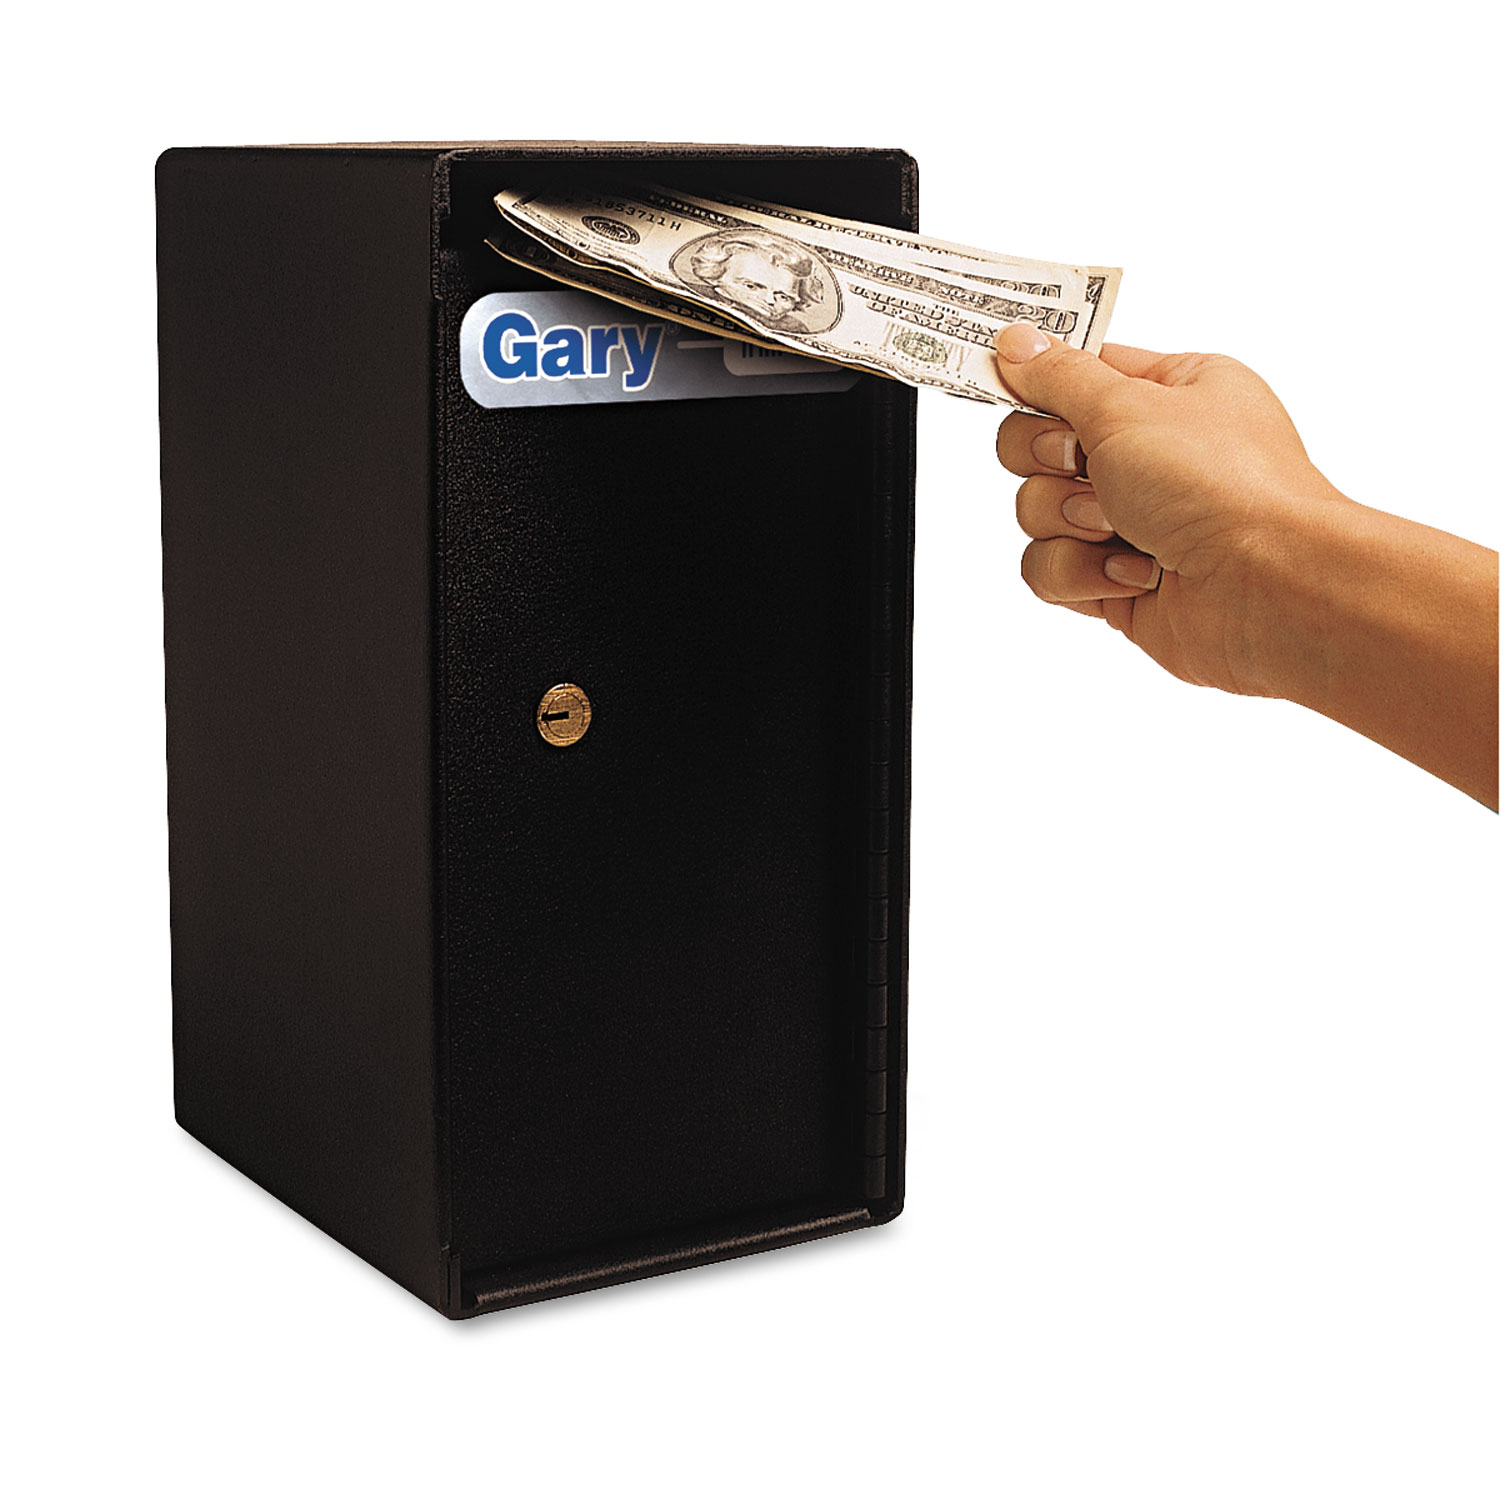 Theft Resistant Compact Cash Trim Safe, 0.2 ft3, 6w x 7d x 12h, Black